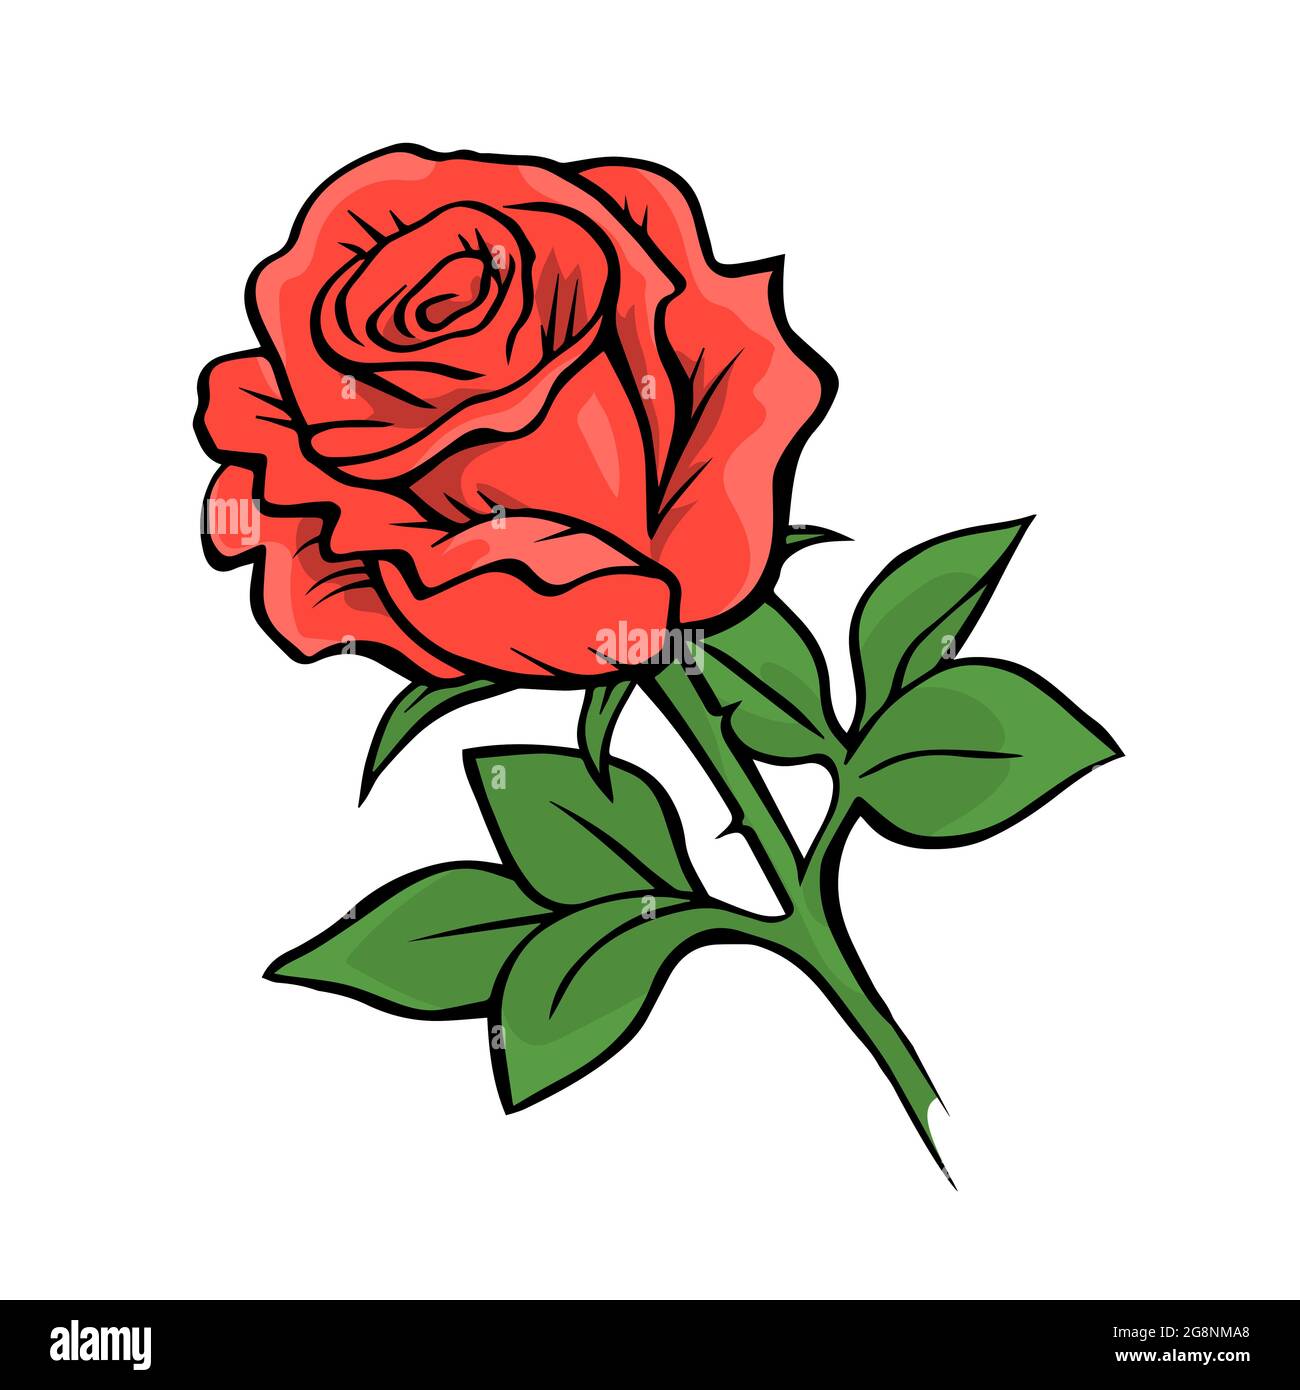 Rosa rossa su sfondo bianco. Disegno a mano con linee. Piante e fiori. Design decorativo. Illustrazione vettoriale isolata Illustrazione Vettoriale